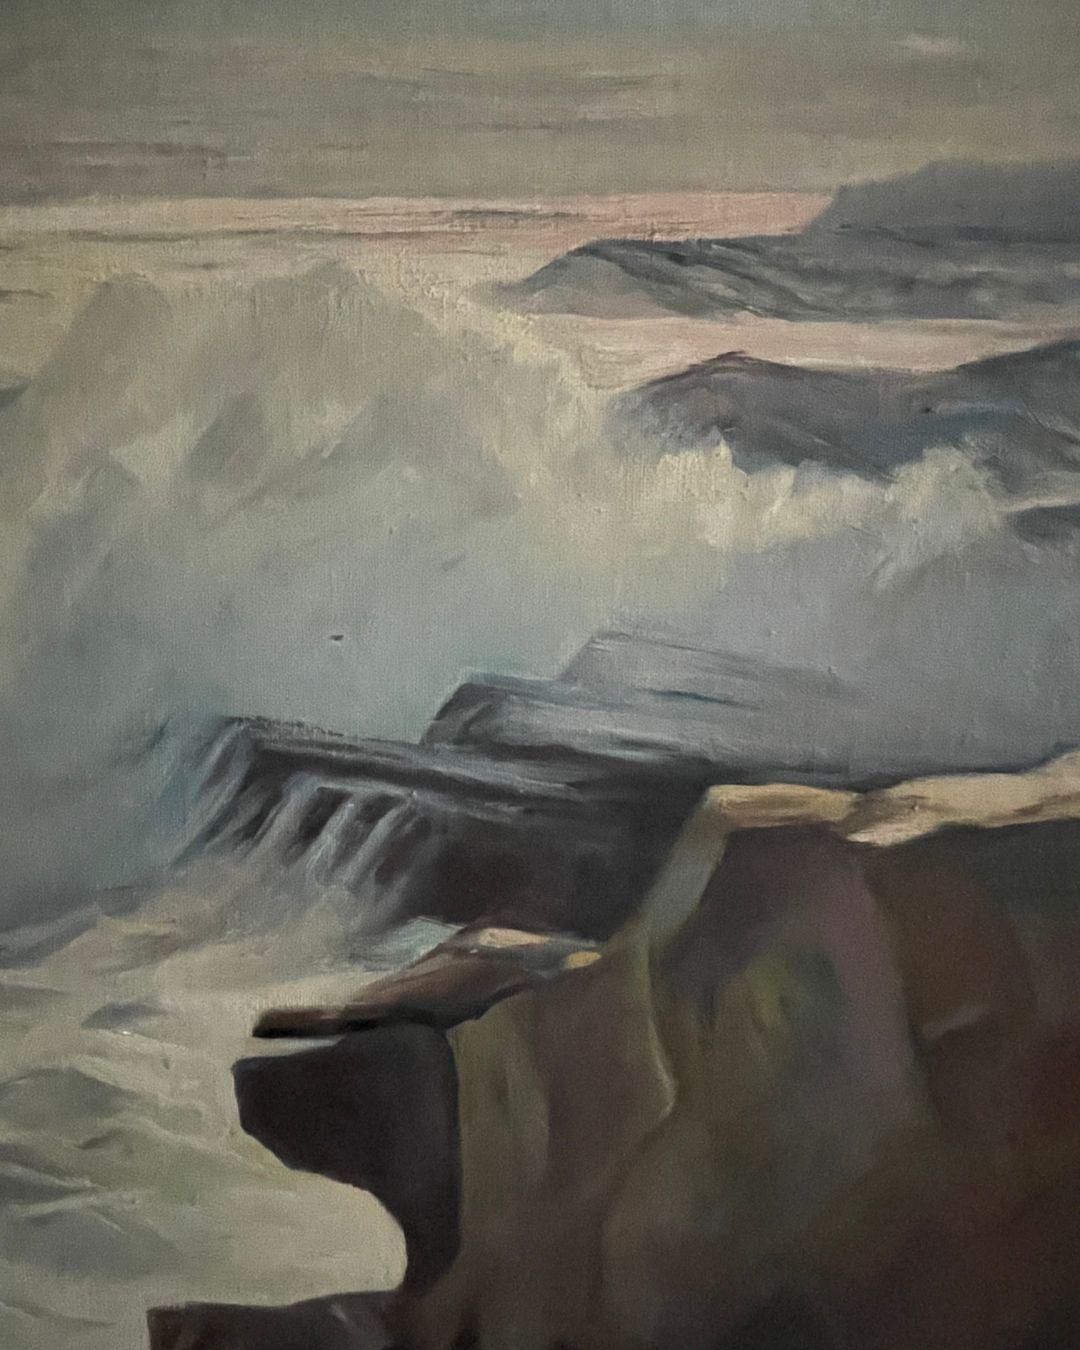 Peinture vintage de paysage marin dans un cadre minimal en bois blond. Signé en bas à gauche.

Dimensions : 18.75 